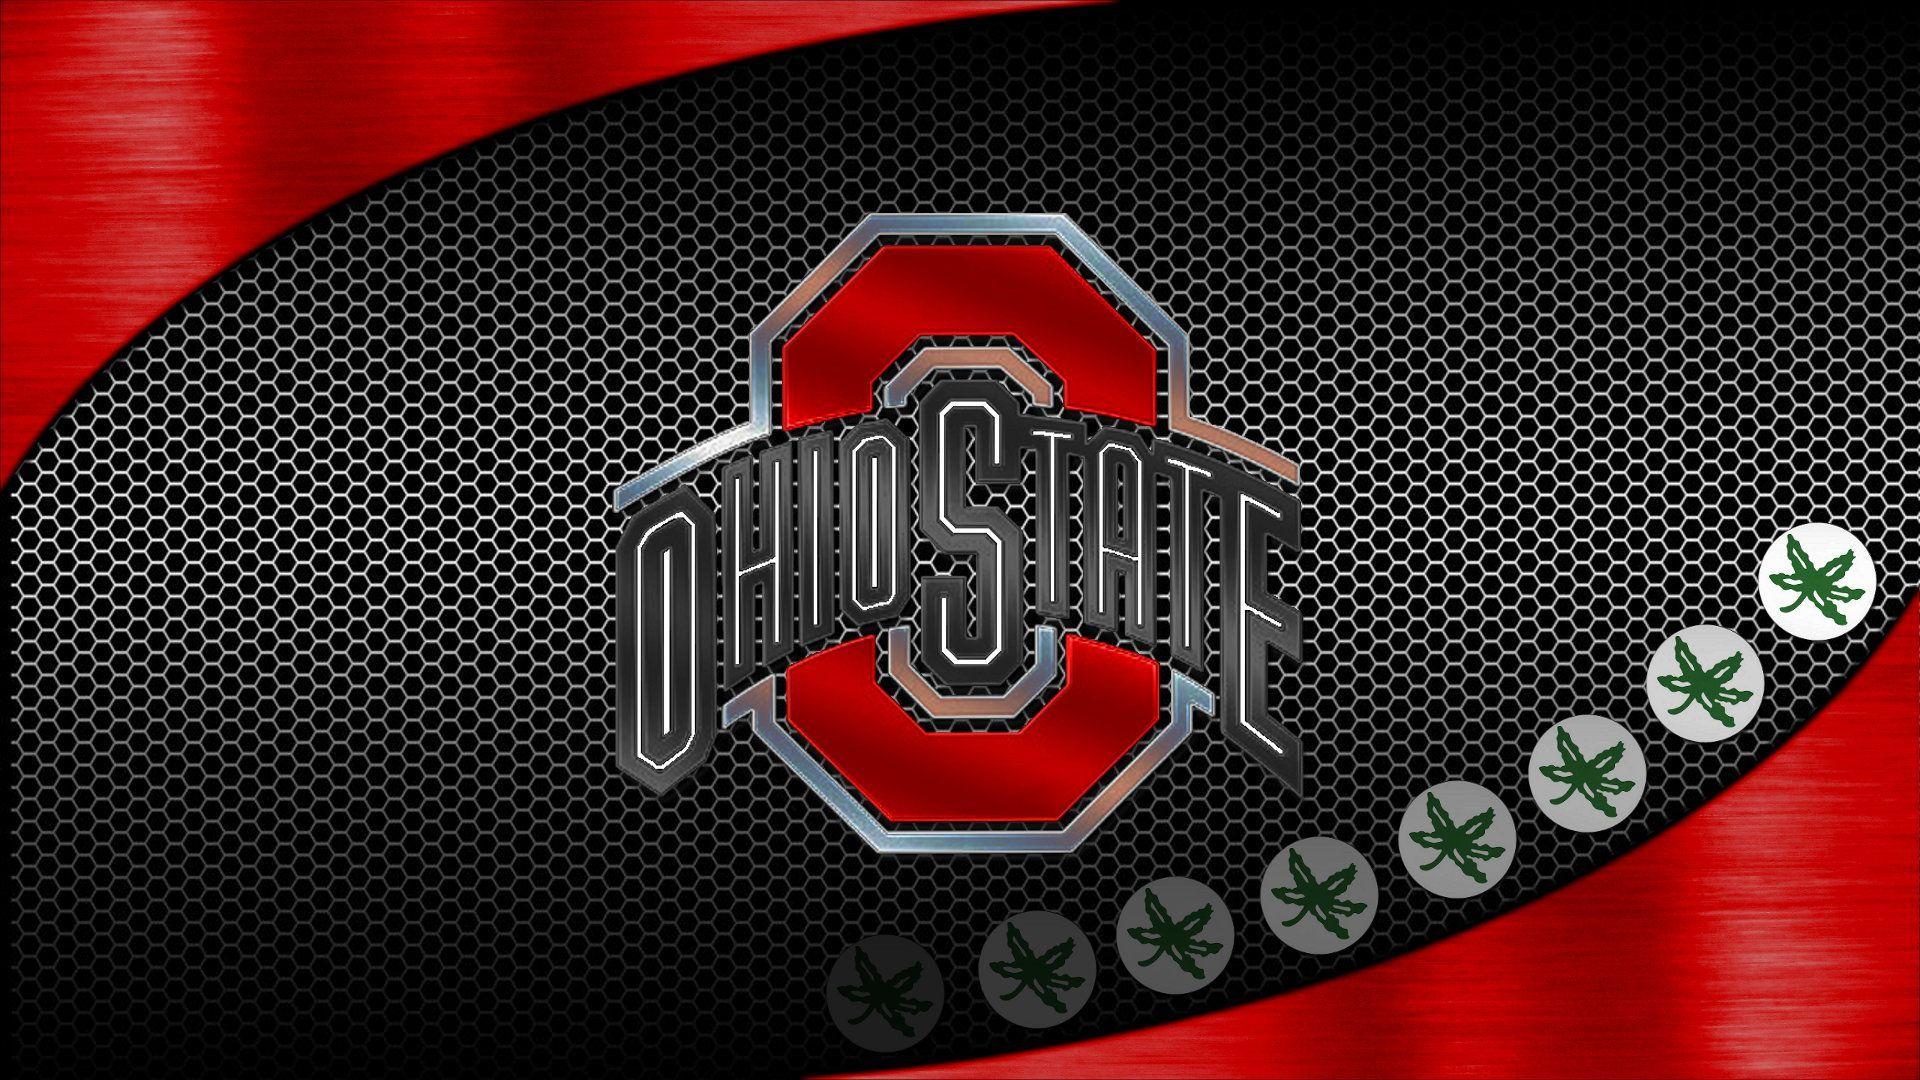 OSU Wallpaper 532. Ohio state wallpaper, Ohio state buckeyes, Ohio state